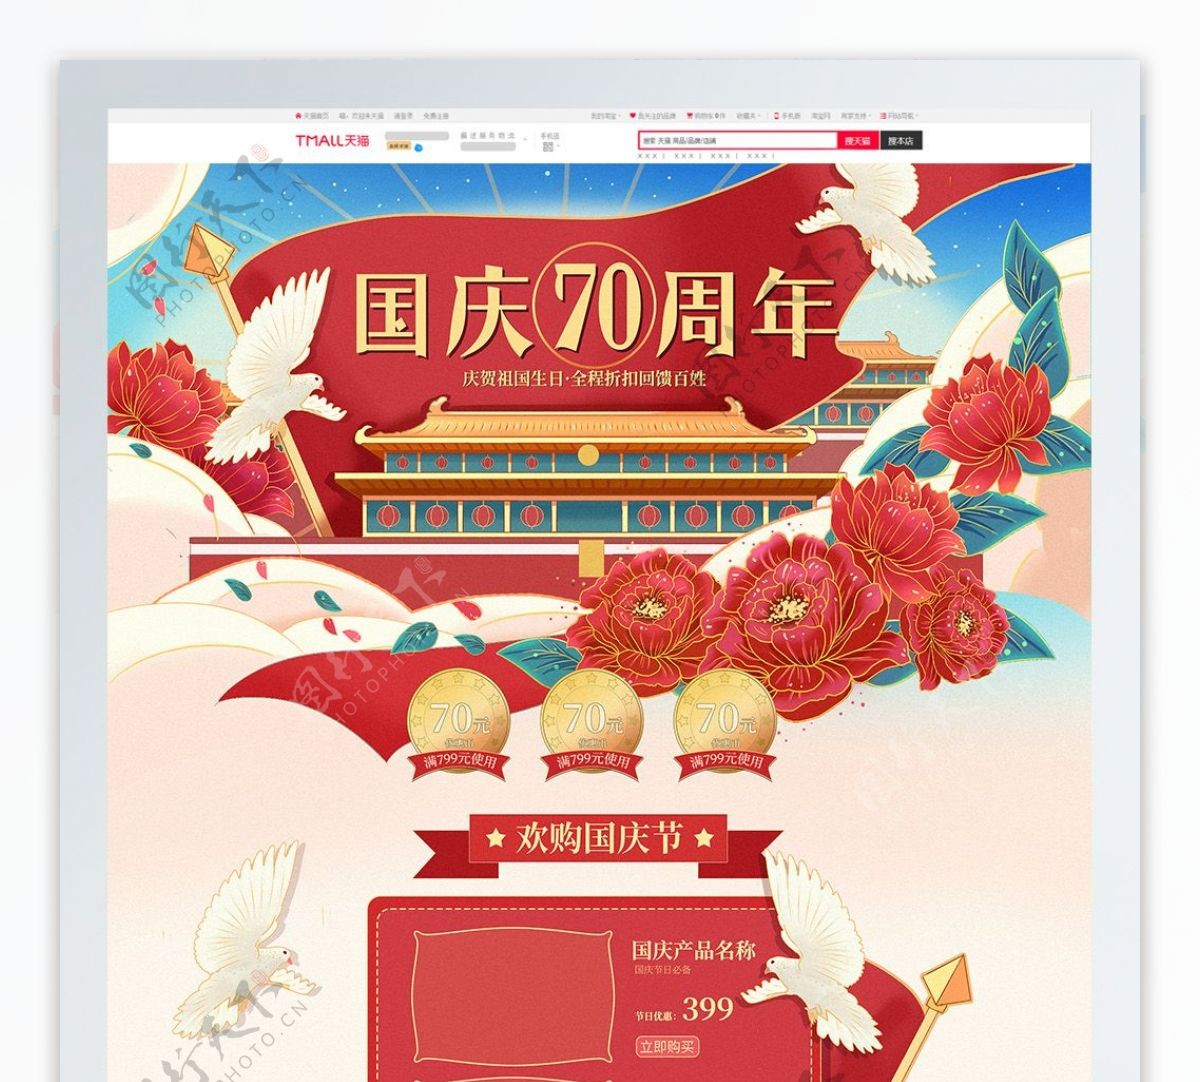 国庆70周年纪念日手绘插画电商模板